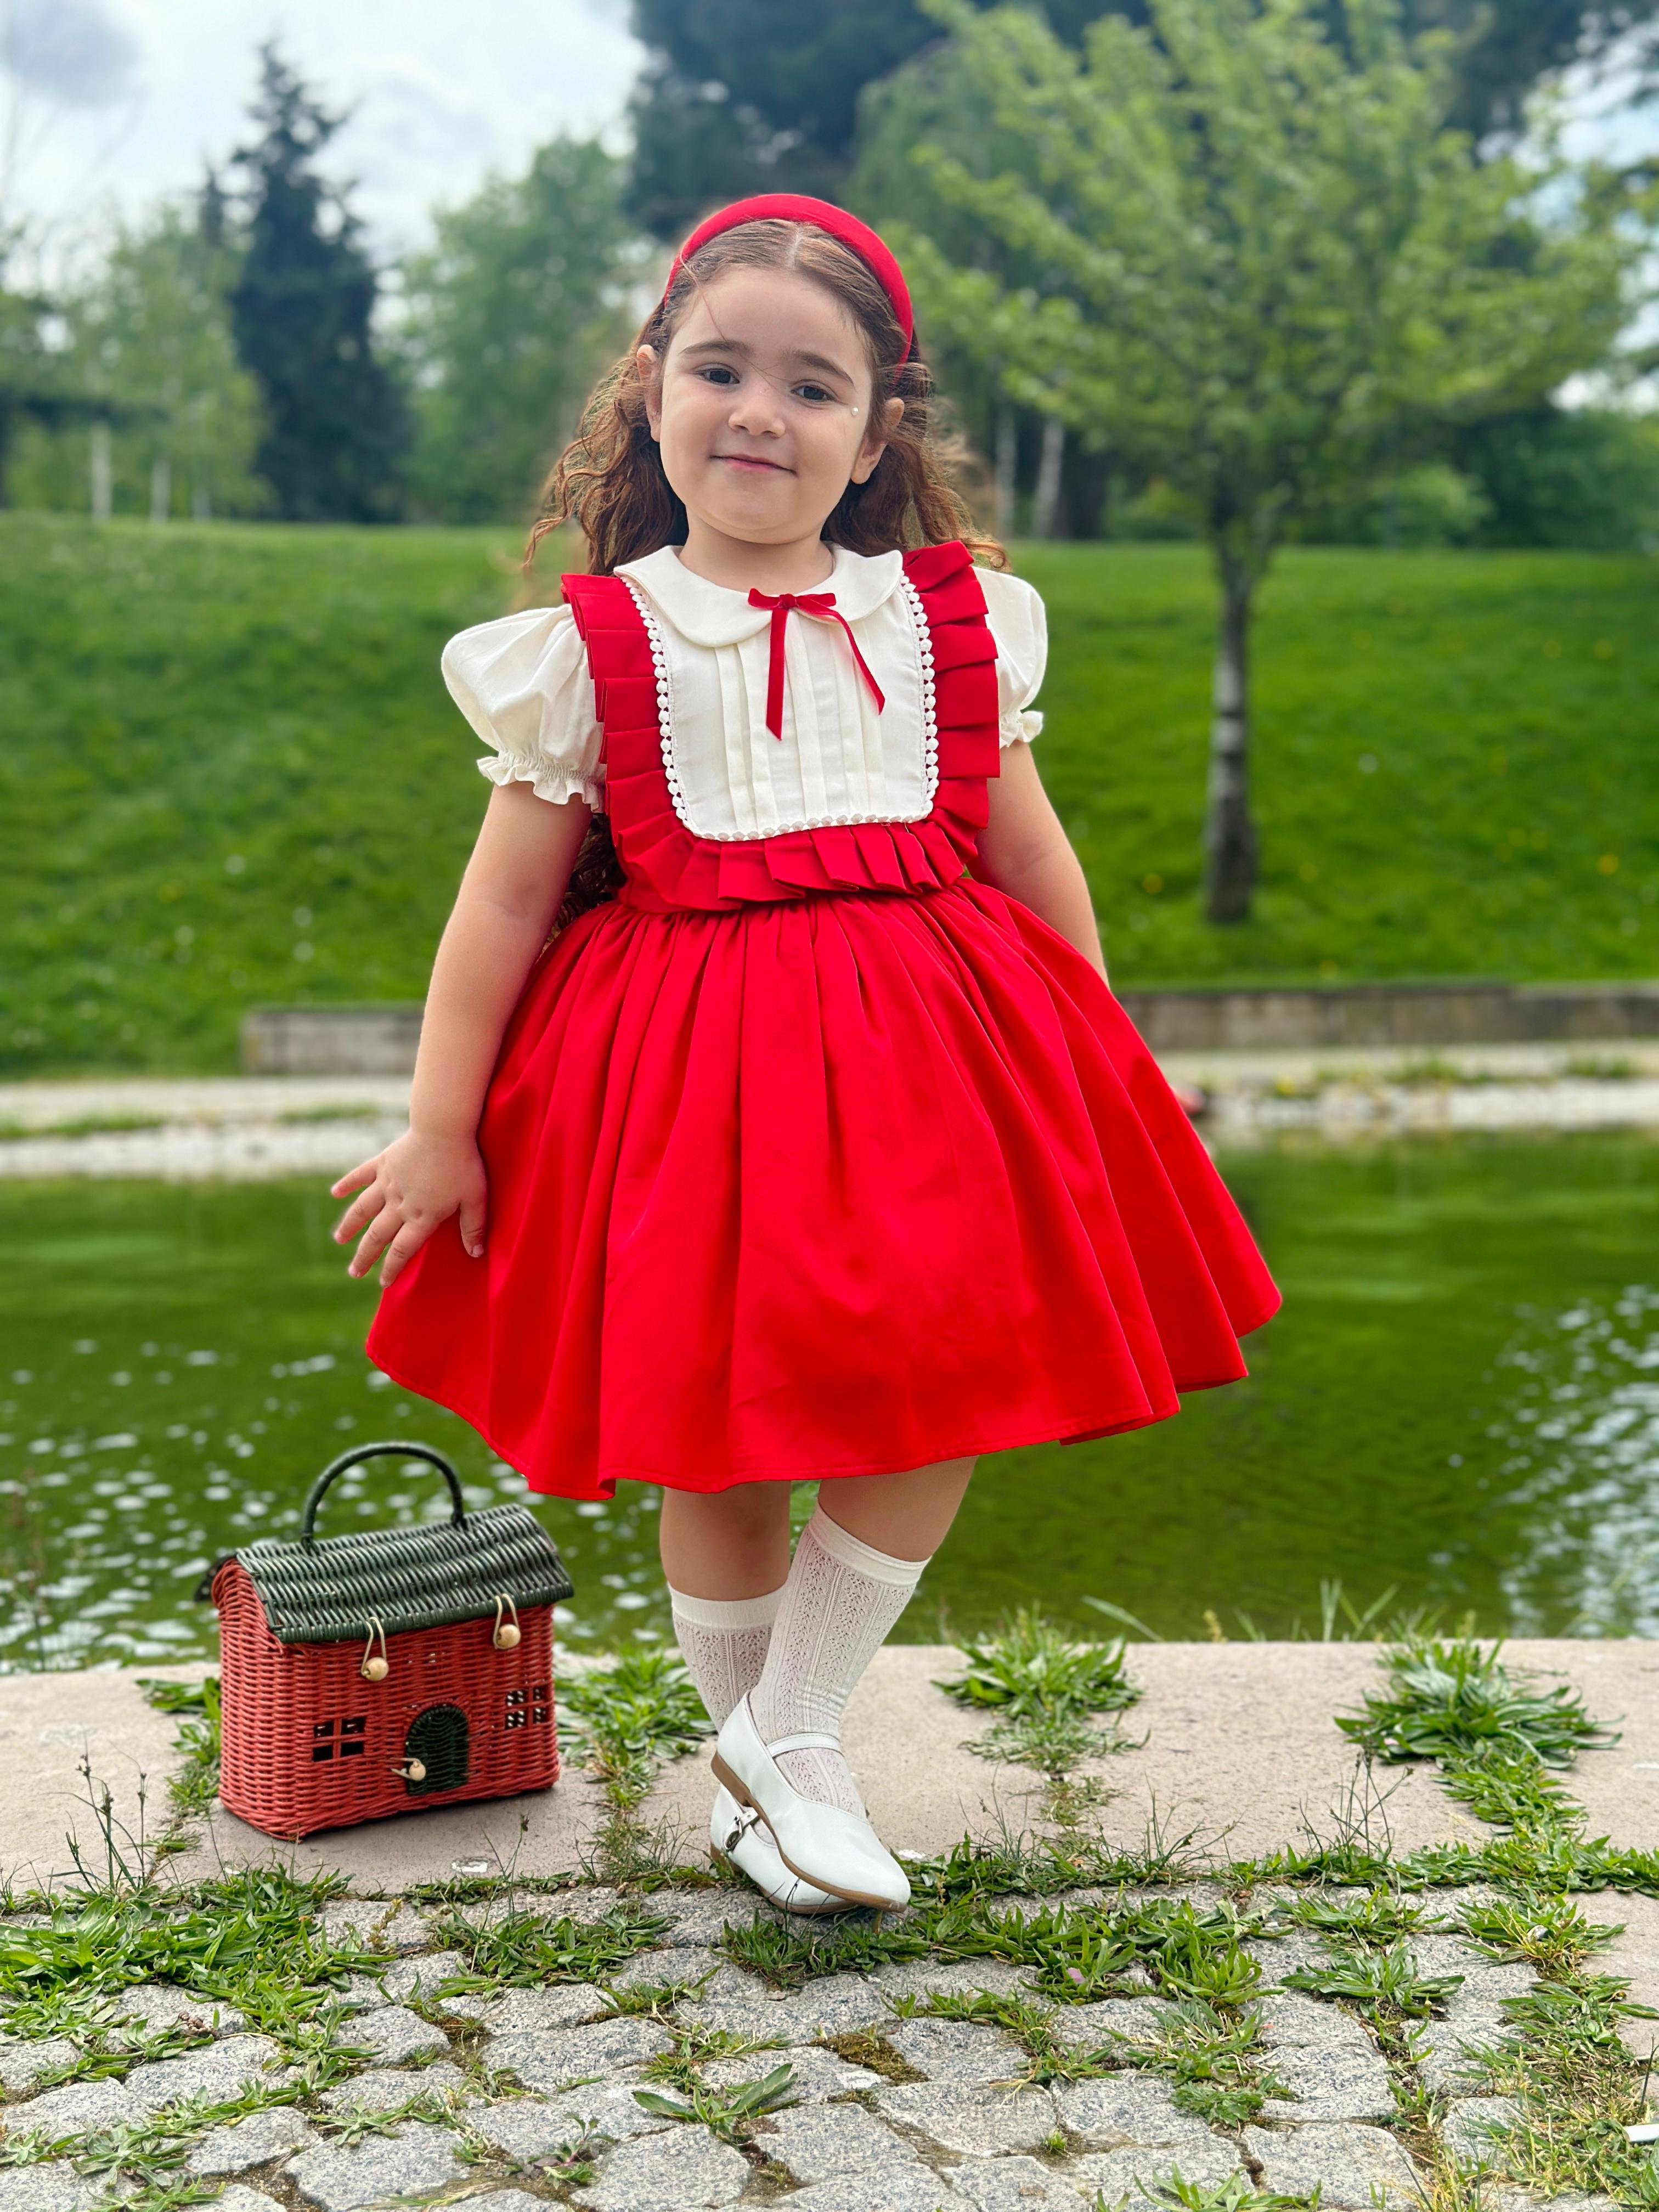 Kırmızılım Vintage Kız Bebek Elbisesi,Doğum günü,fotoğraf çekim elbise,0-12 Yaş Uygun - Kırmızı